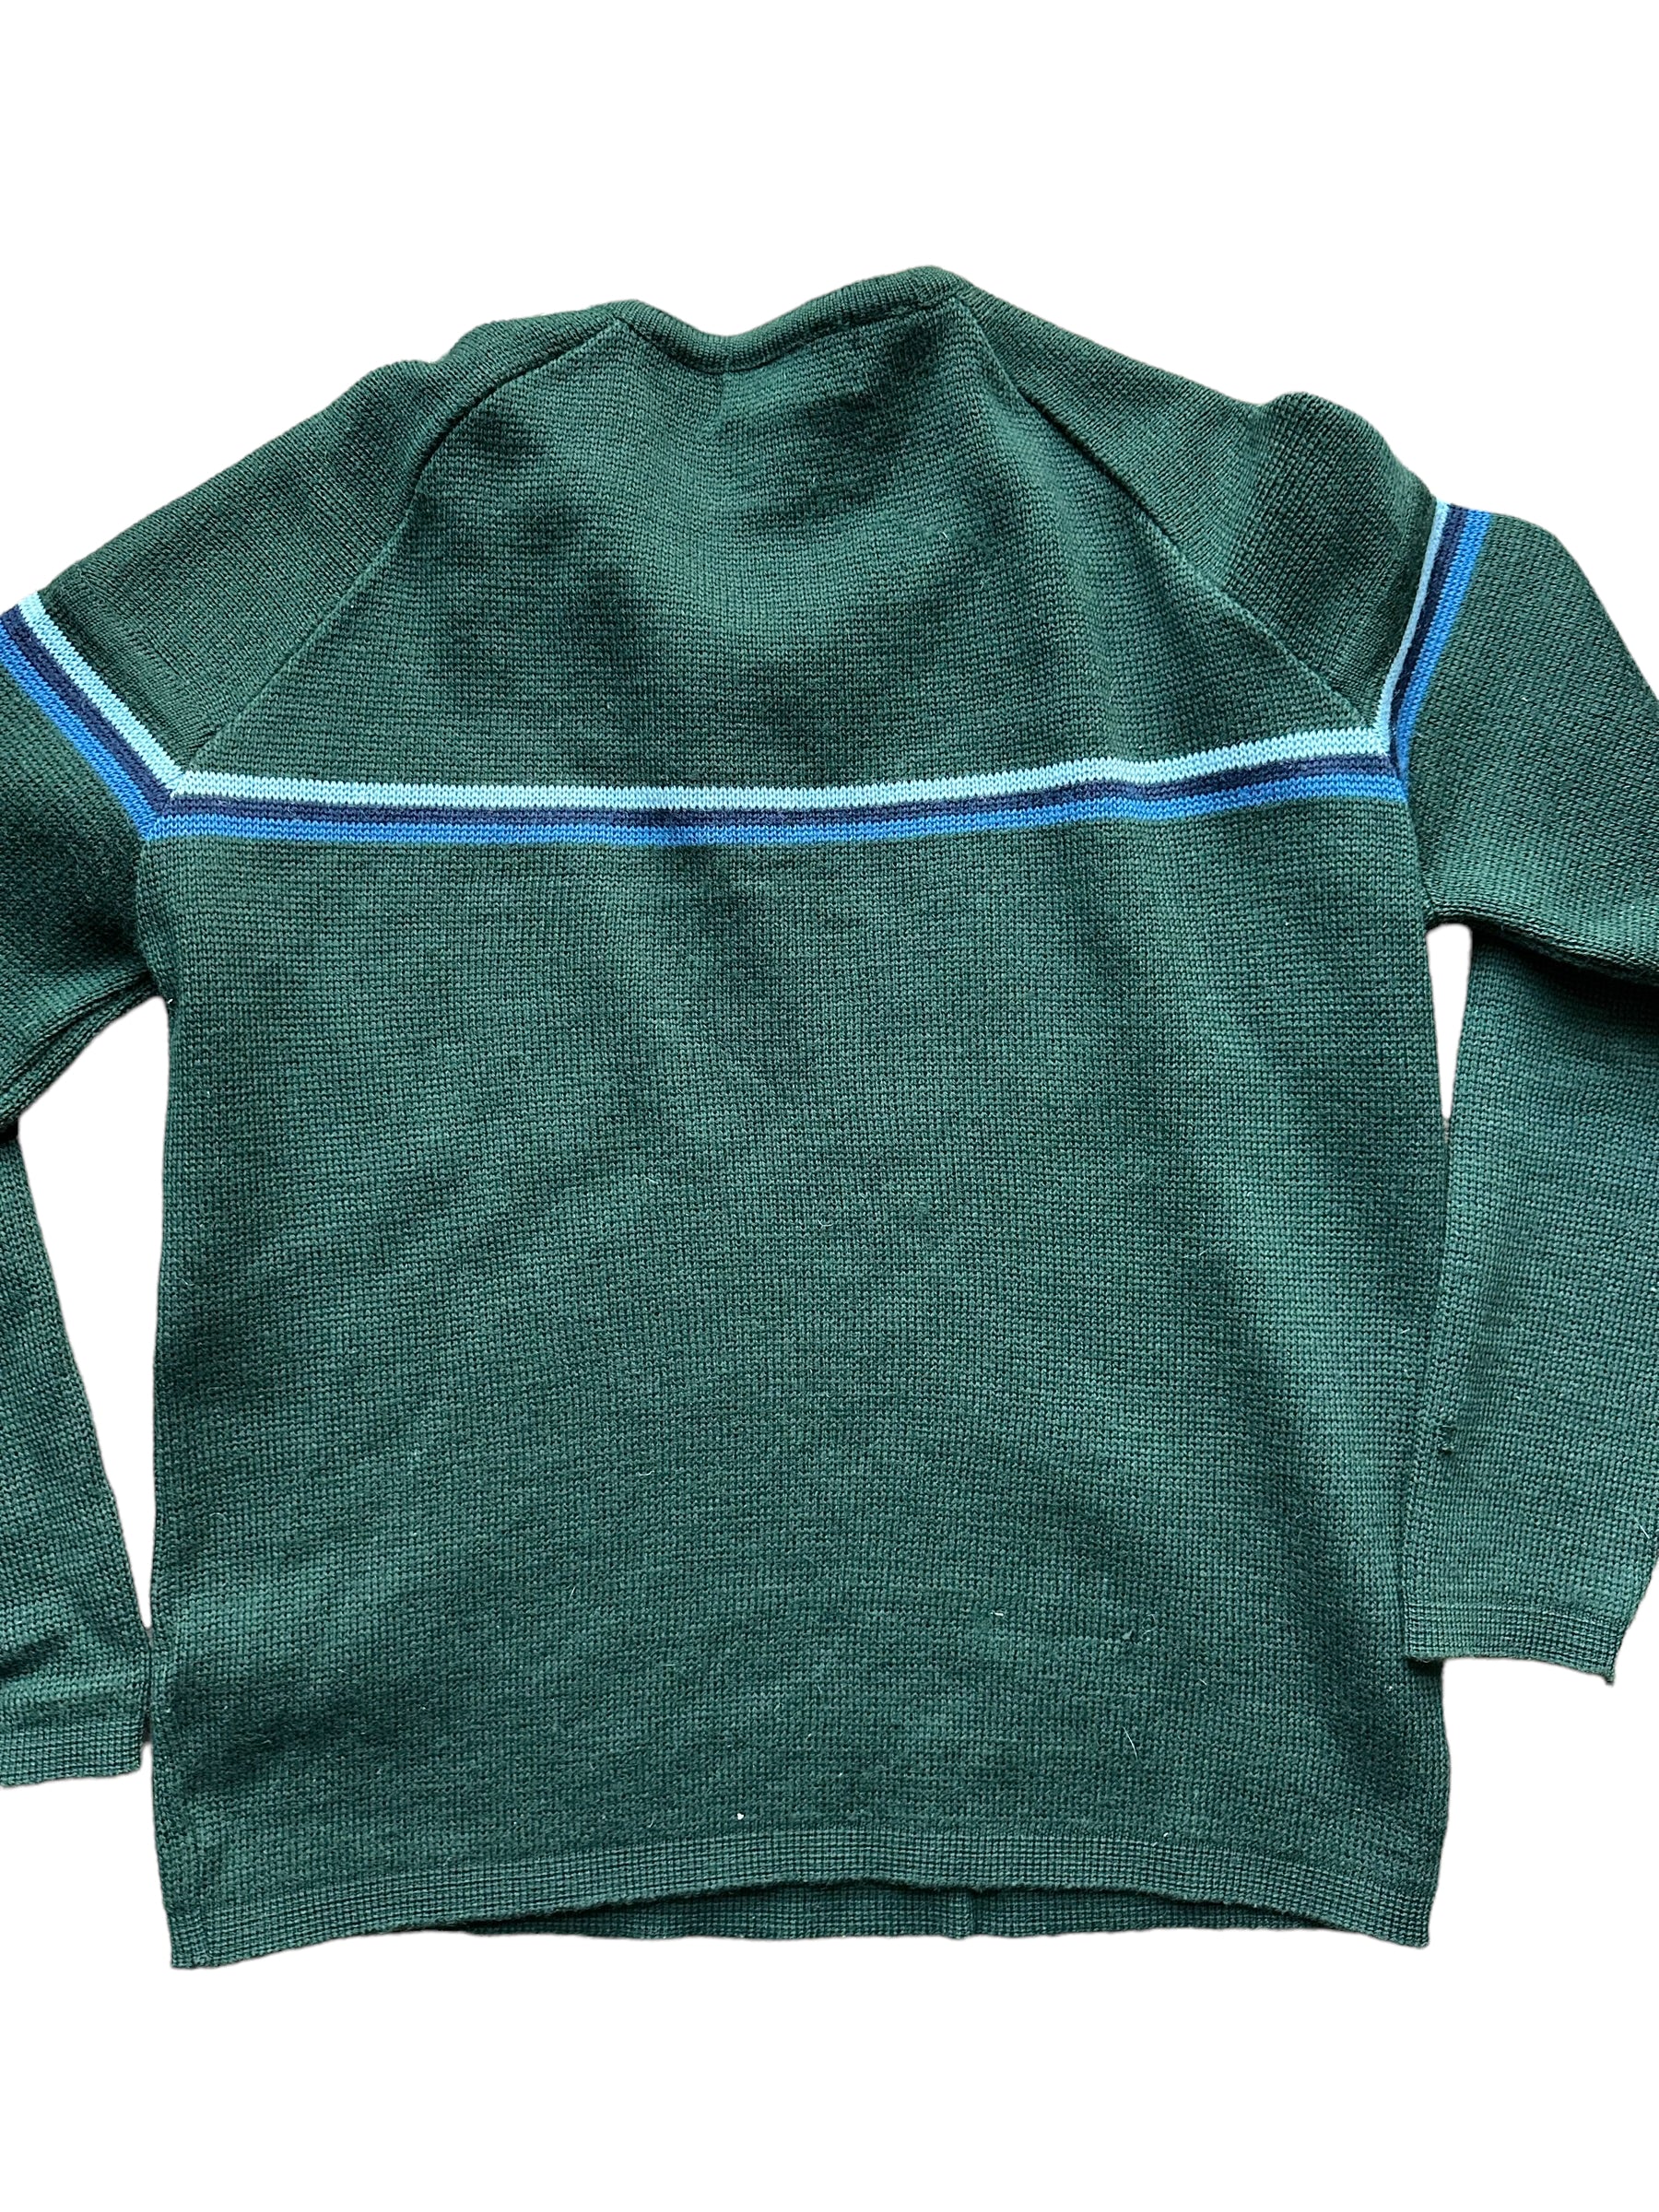 Rear Detail on Vintage Demetre Wool Ski Sweater SZ M |  Vintage Sweaters Seattle | Barn Owl Vintage Seattle